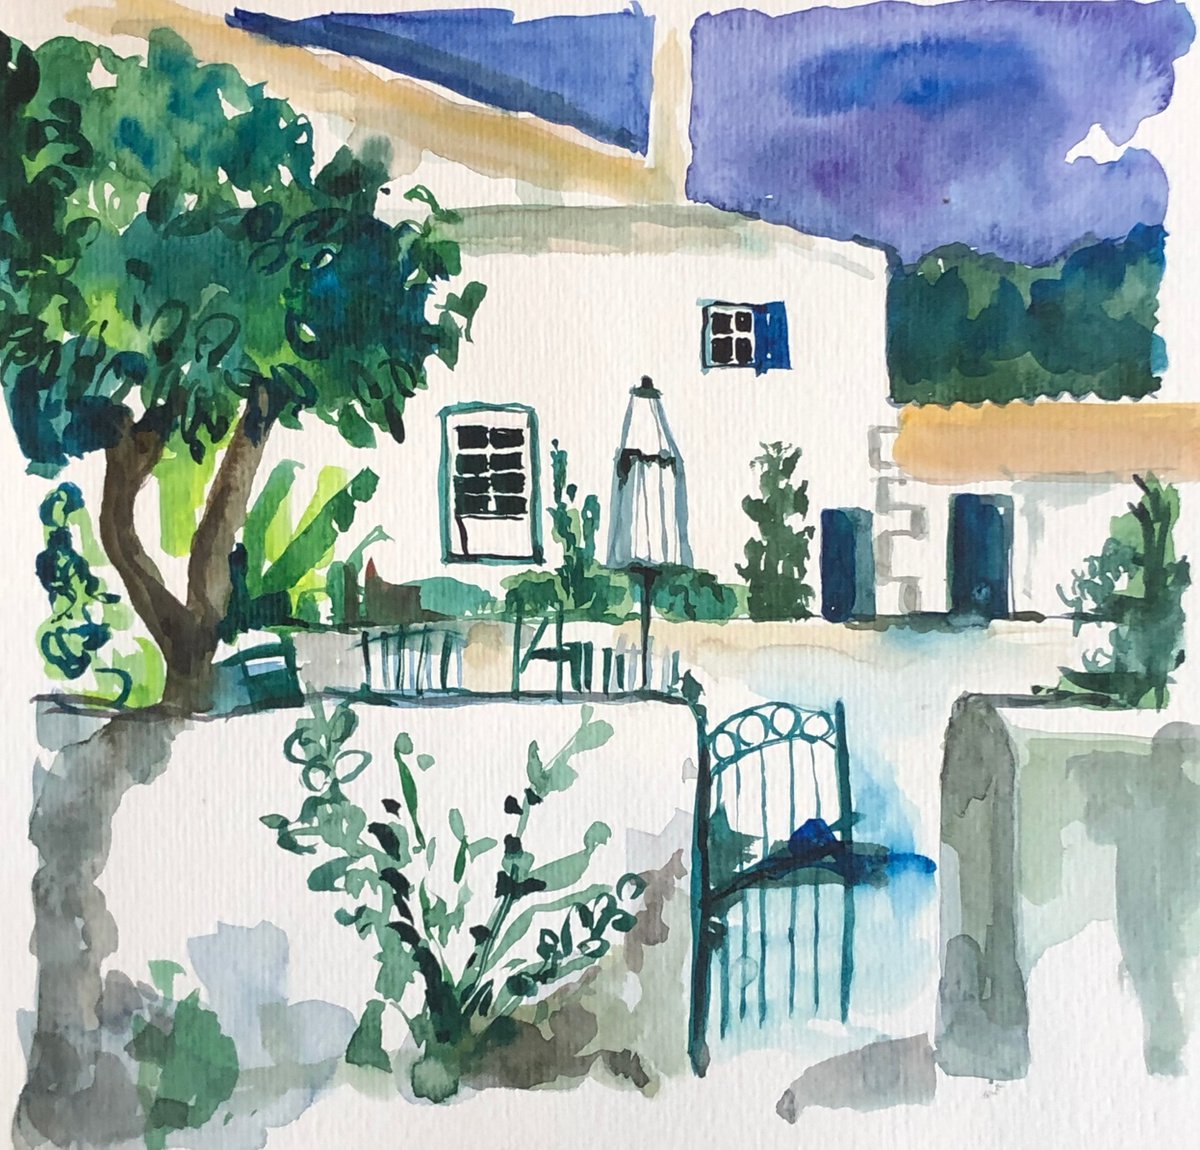 Menorcan House - Baleariac Islands by Annie Meier